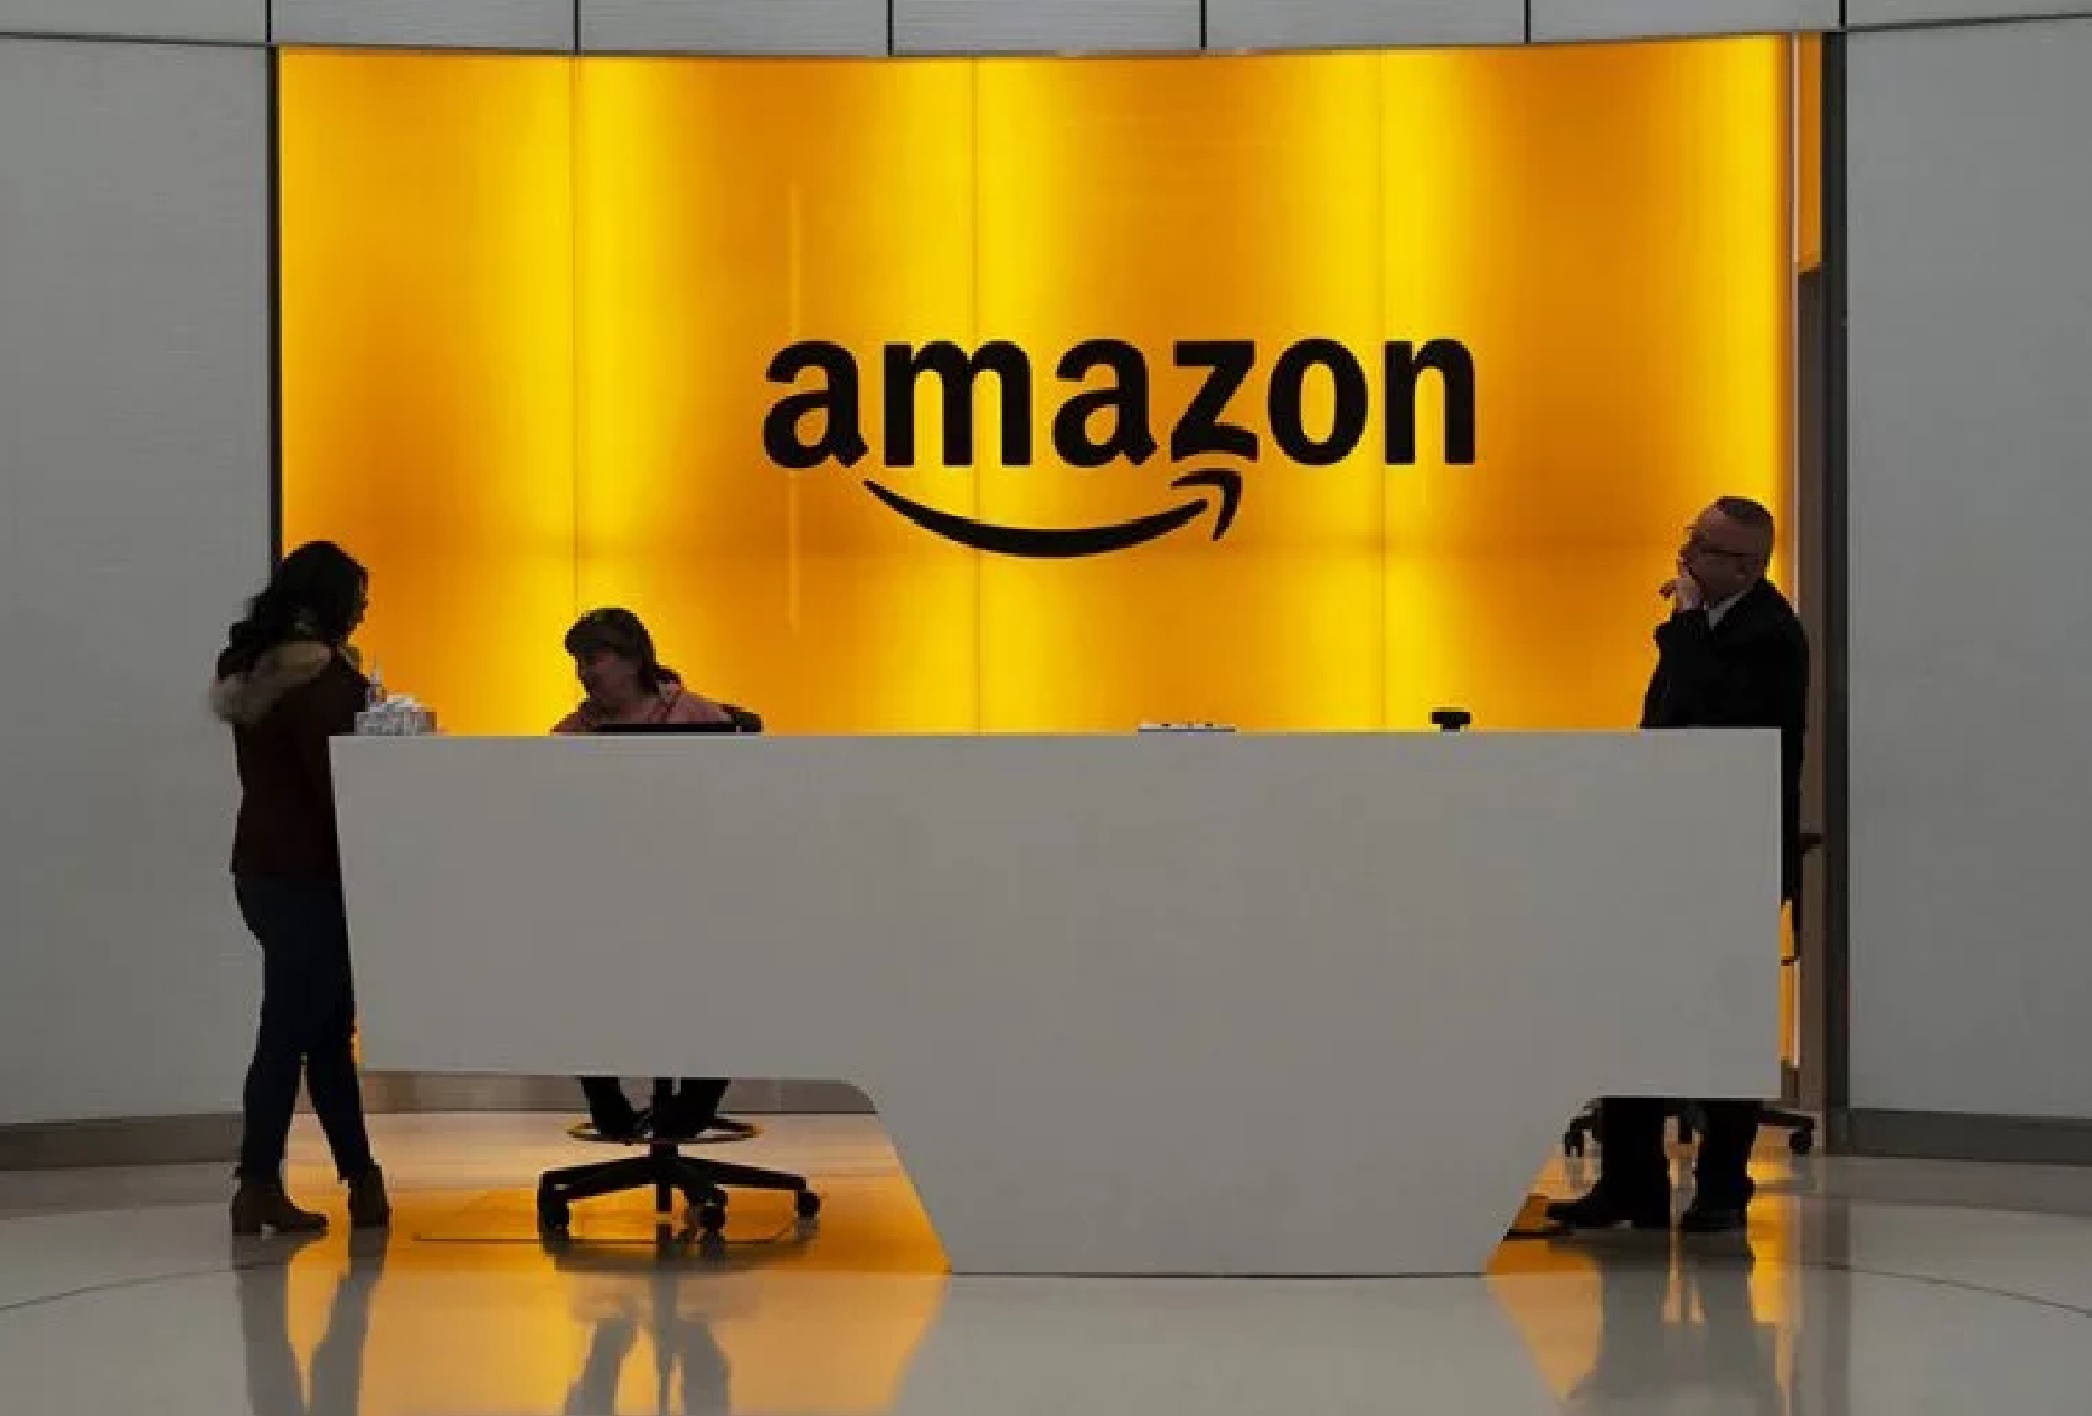 Τέμπη: Η Amazon αναβάλλει την προβολή τρέιλερ ως ένδειξη σεβασμού στο τραγικό δυστύχημα